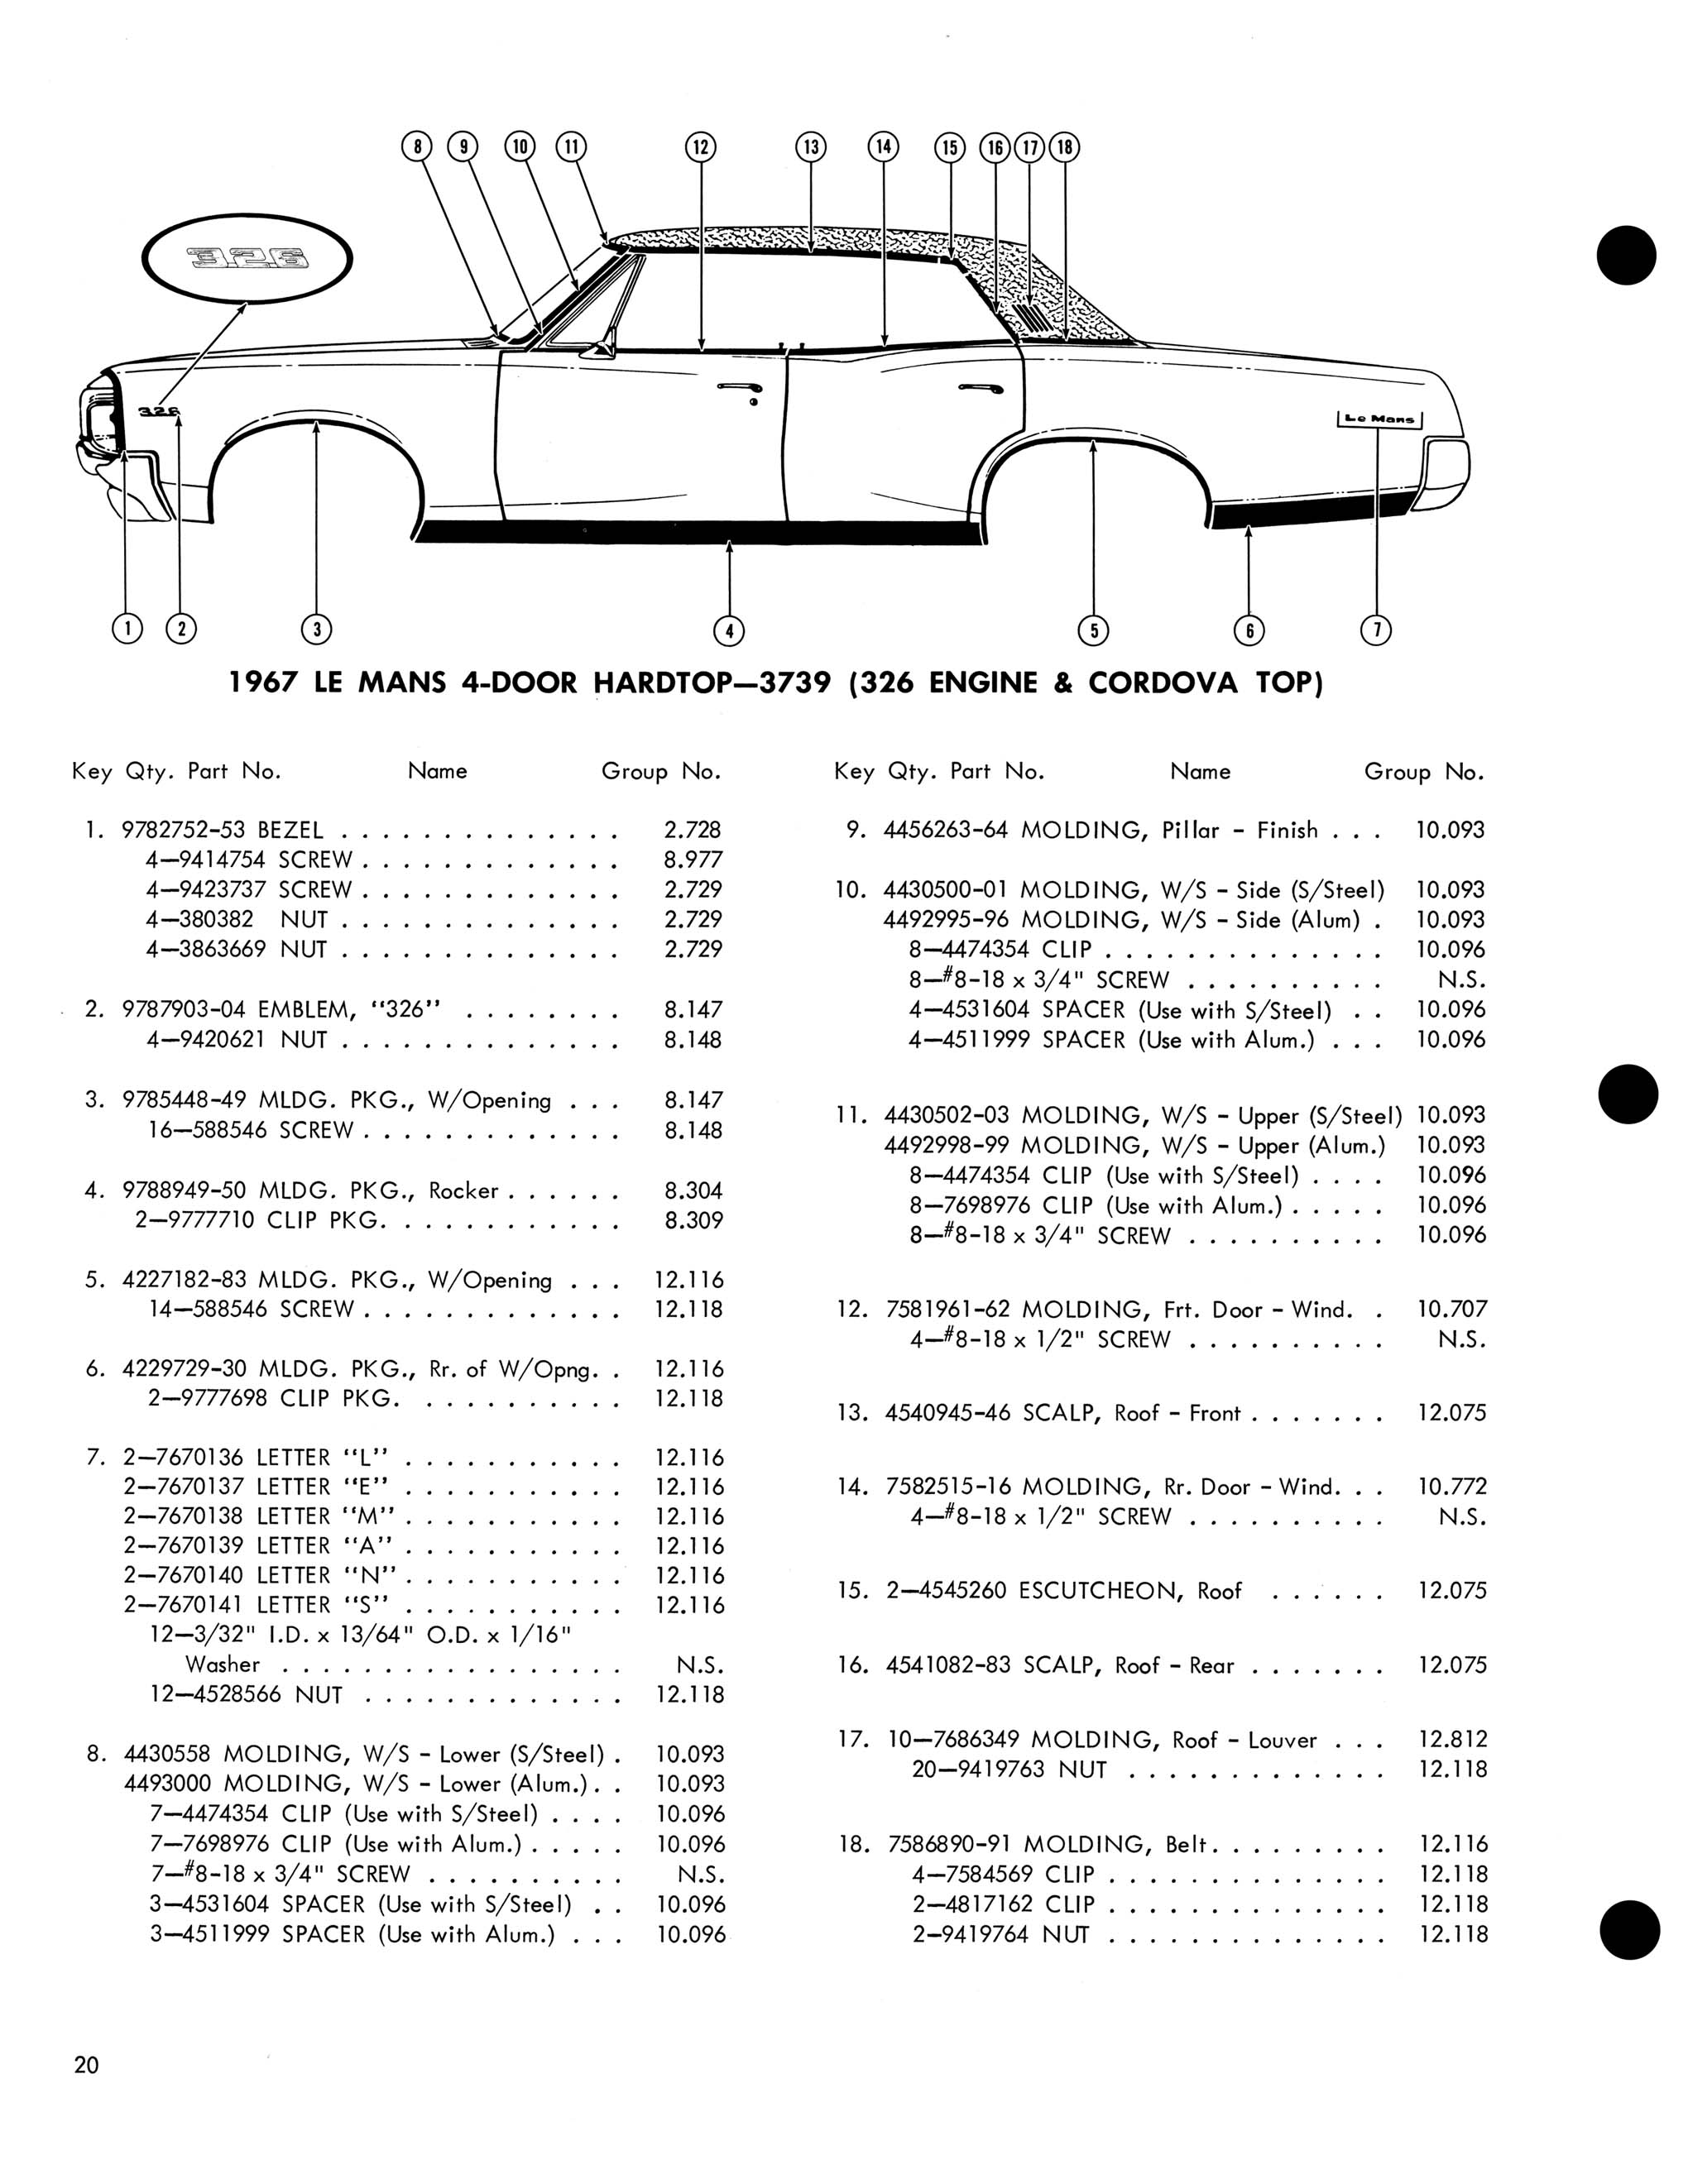 1967 Pontiac Molding and Clip Catalog-20